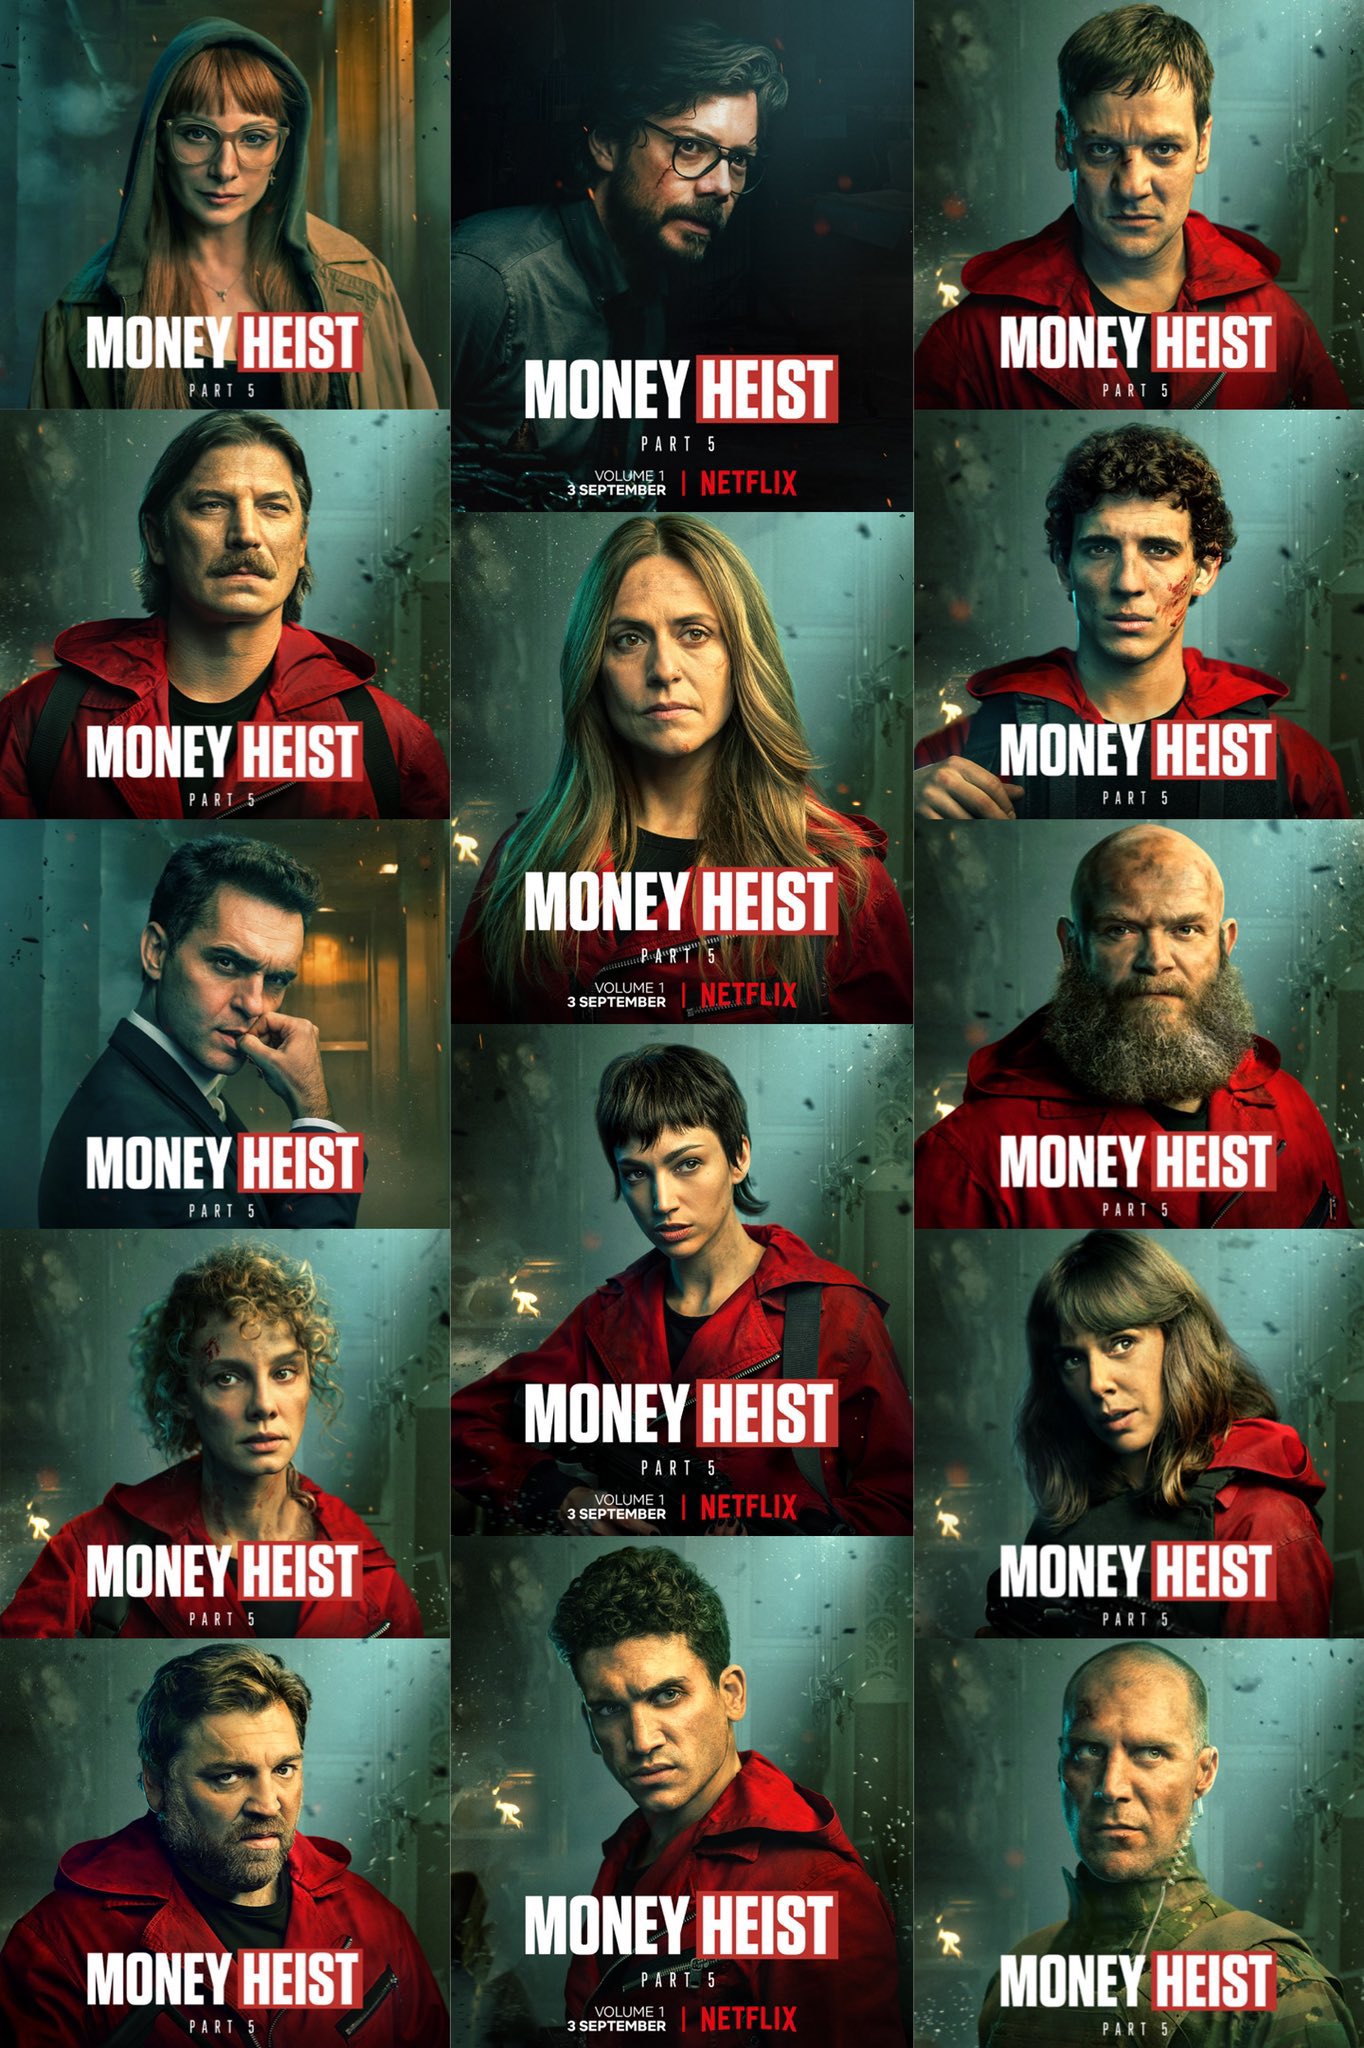 Money Heist 5 wallpaper